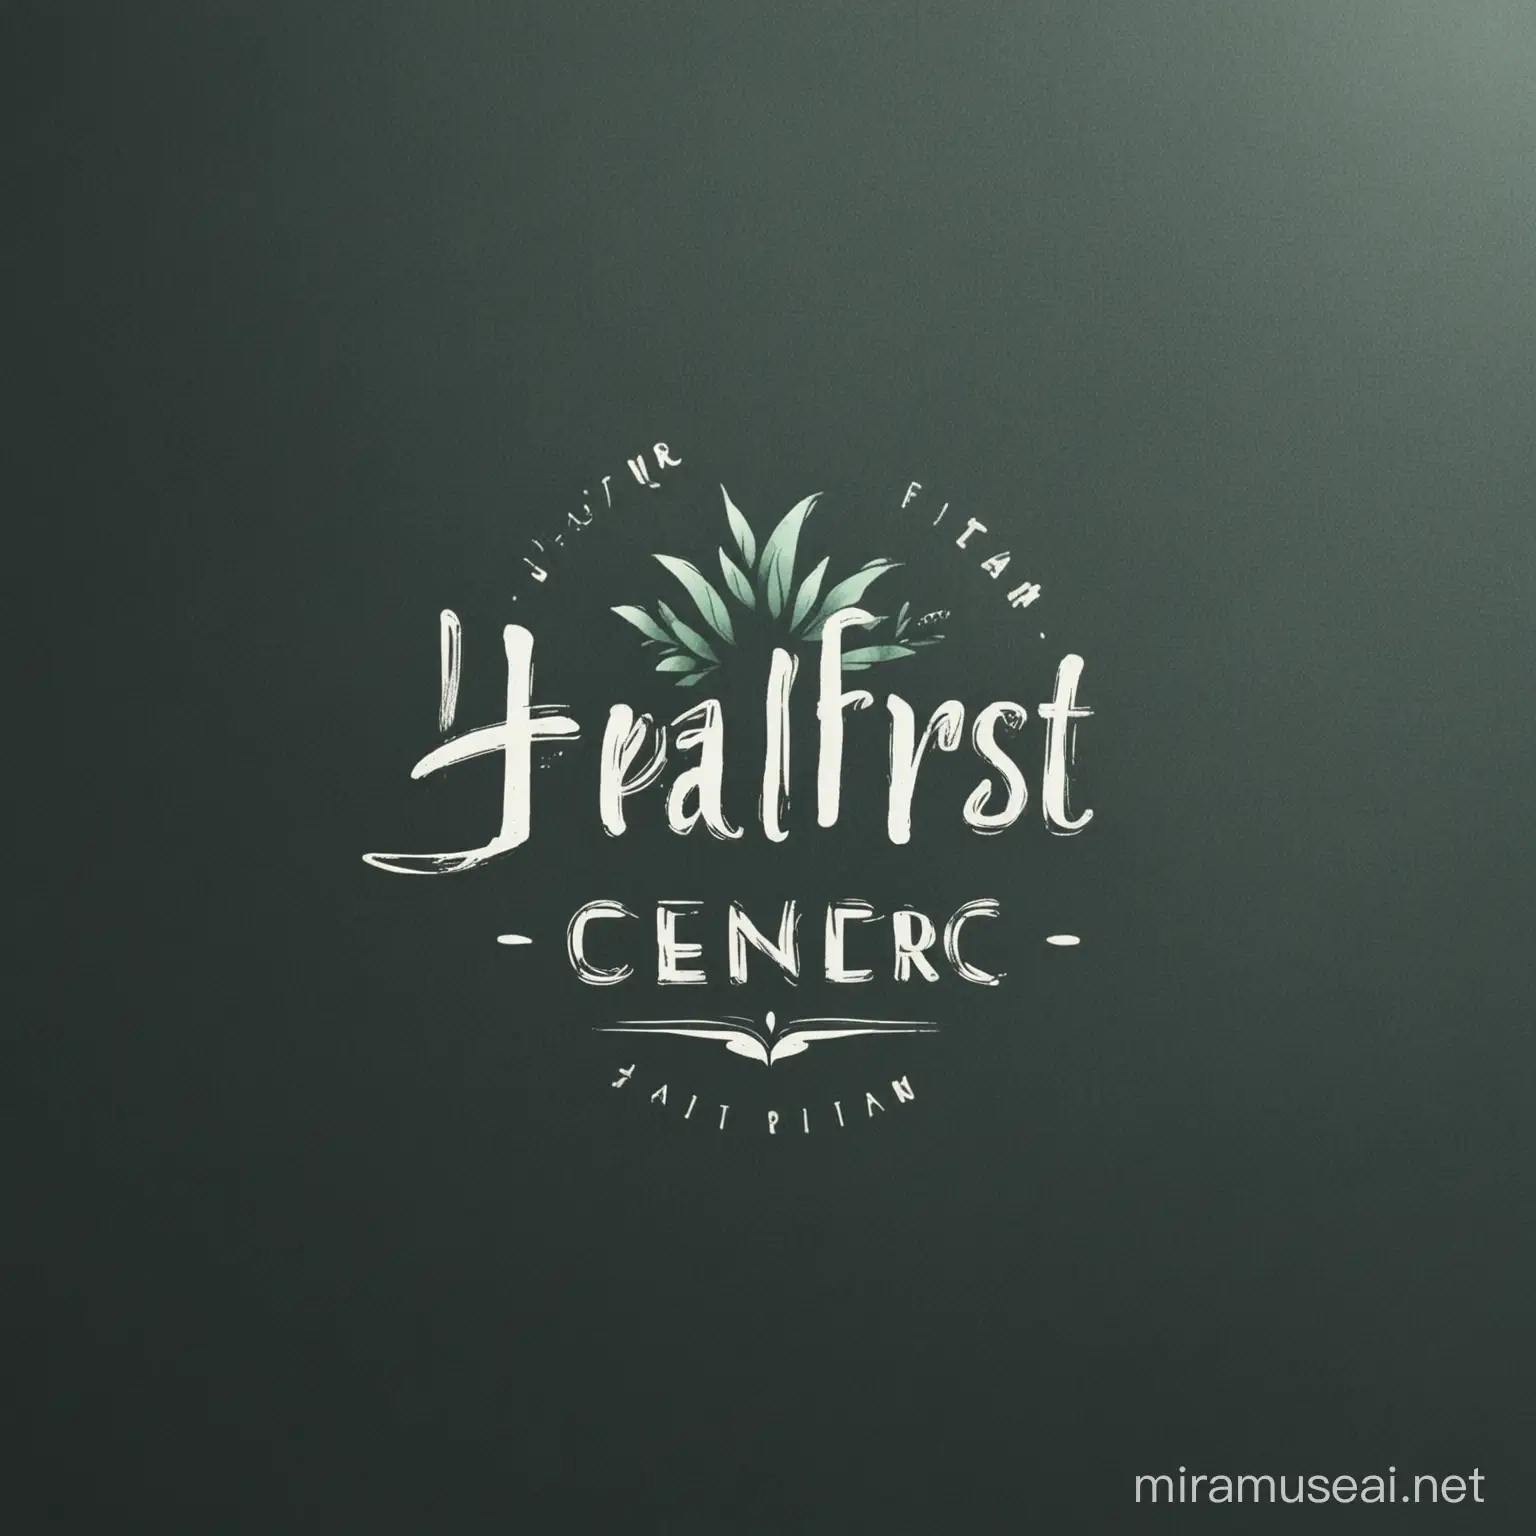 HealFIRST logo for a healing center